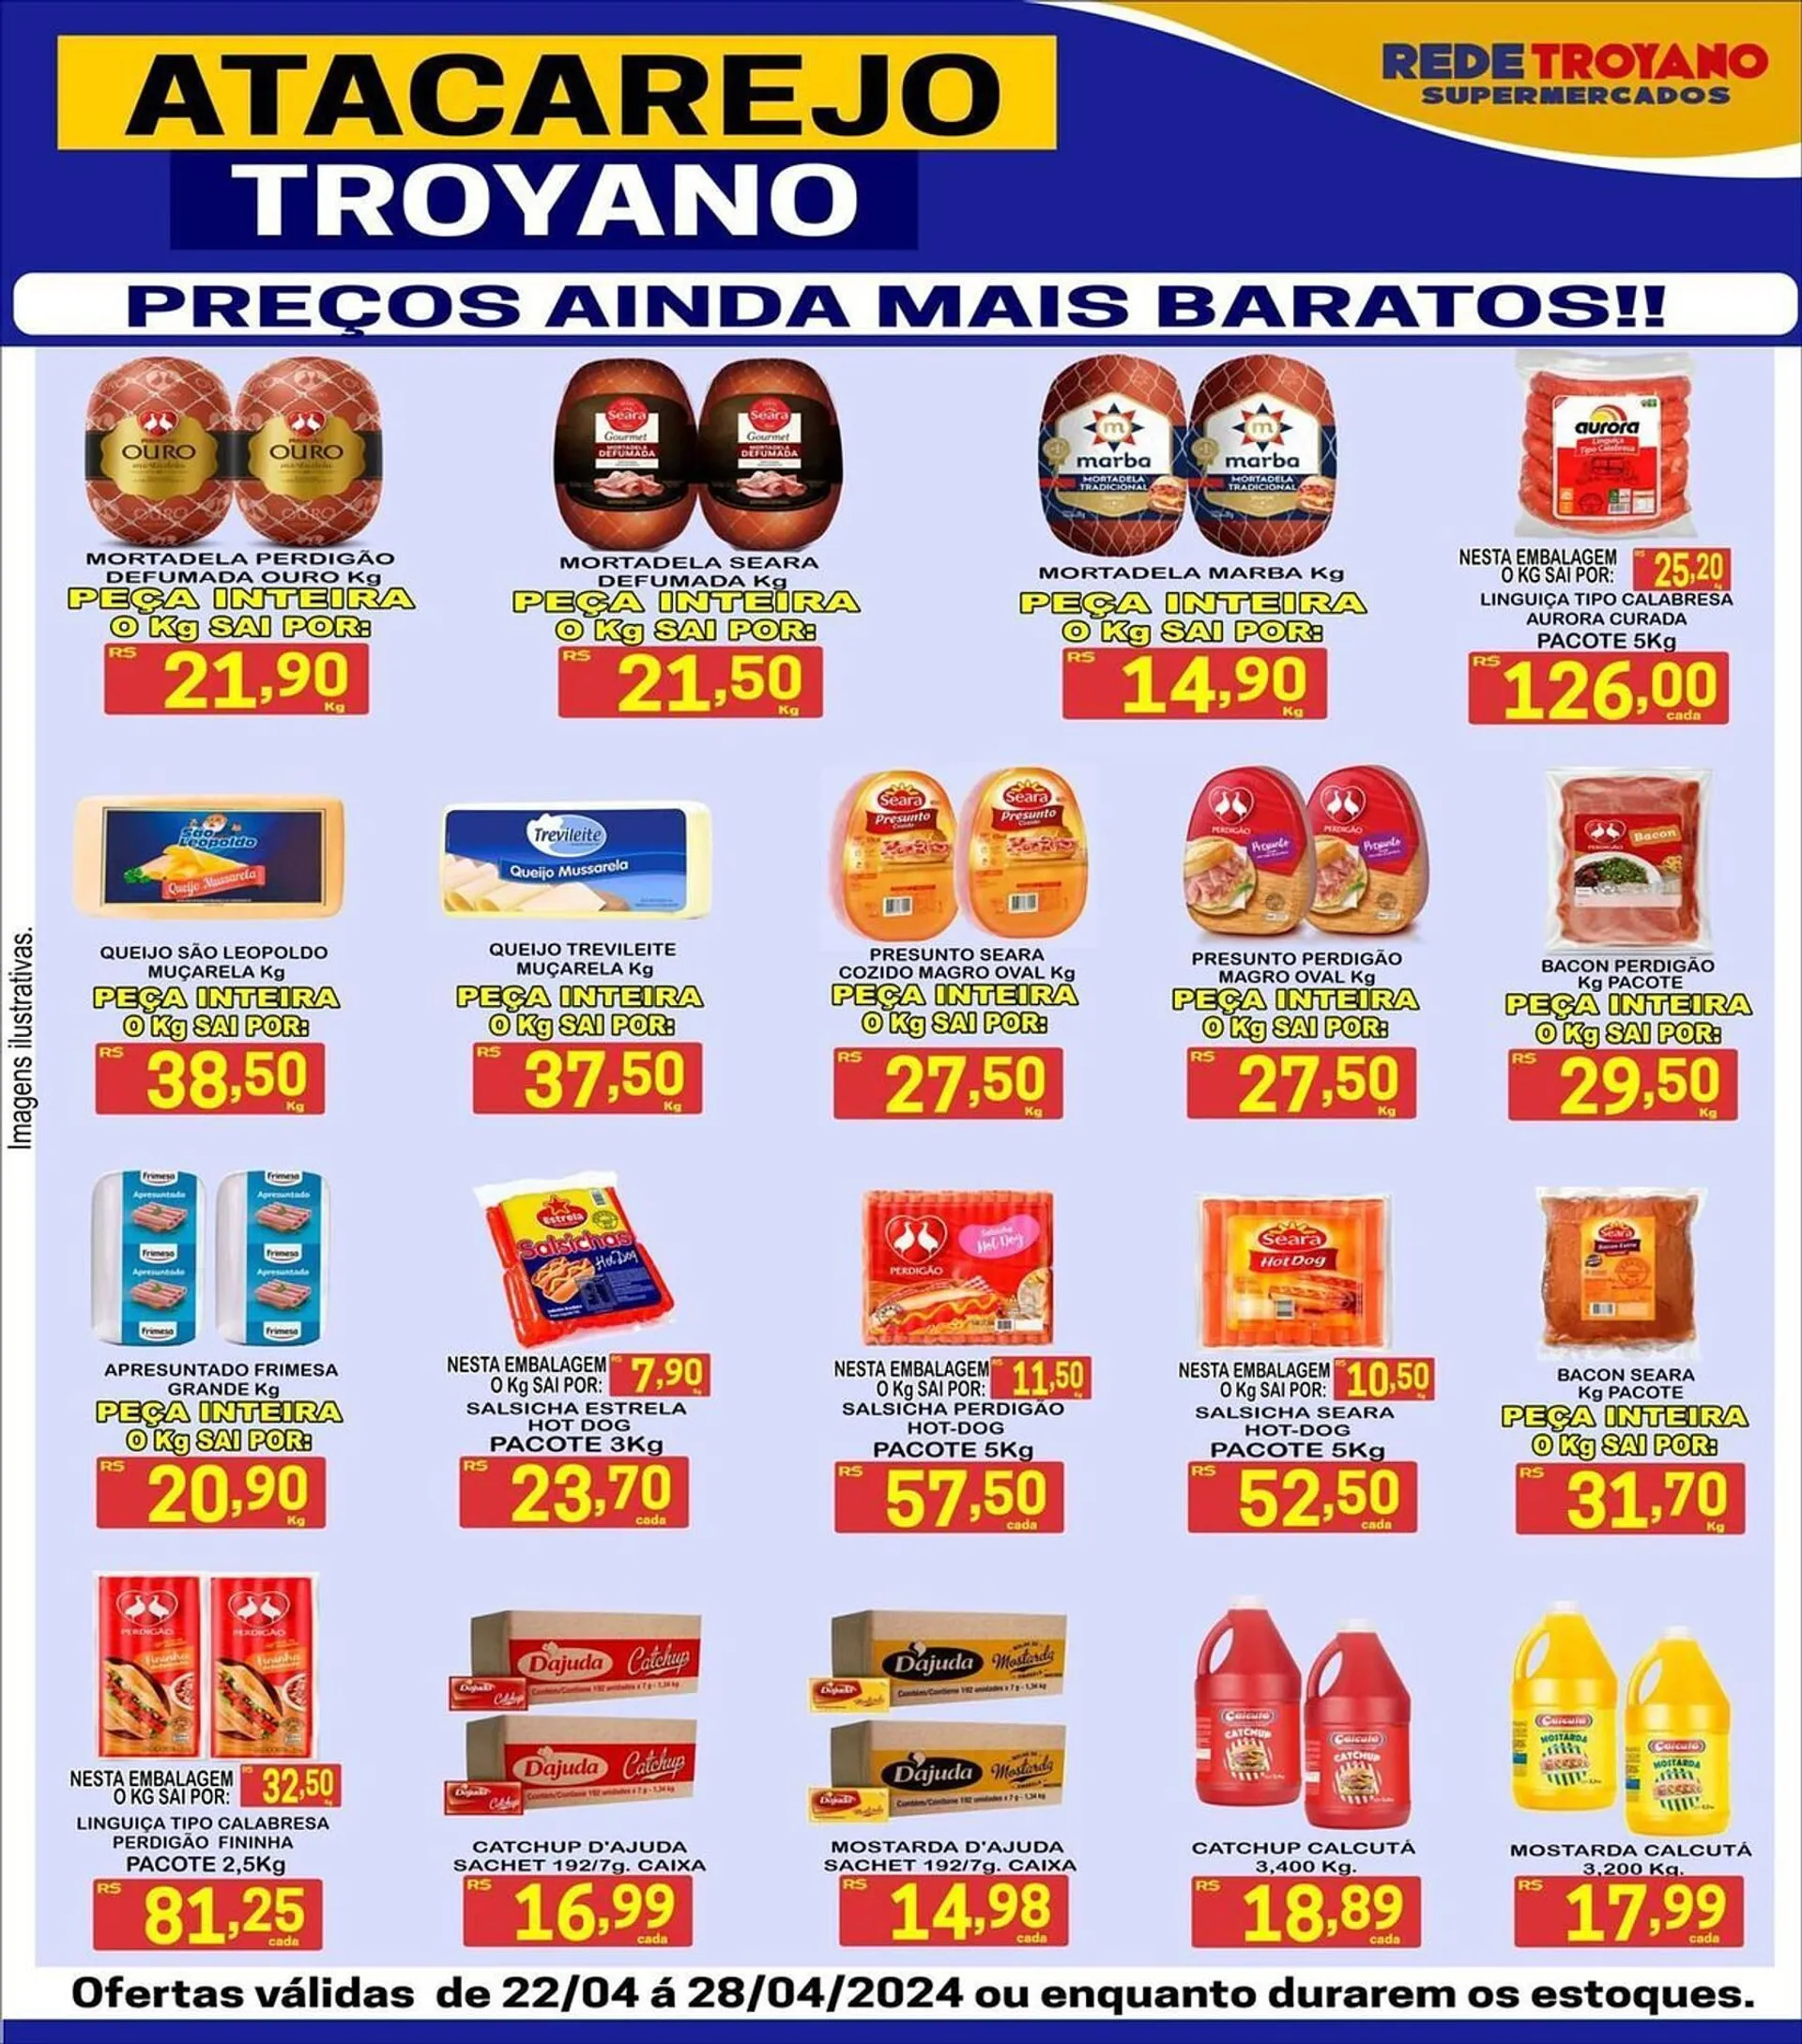 Catálogo Rede Troyano de Supermercados - 1